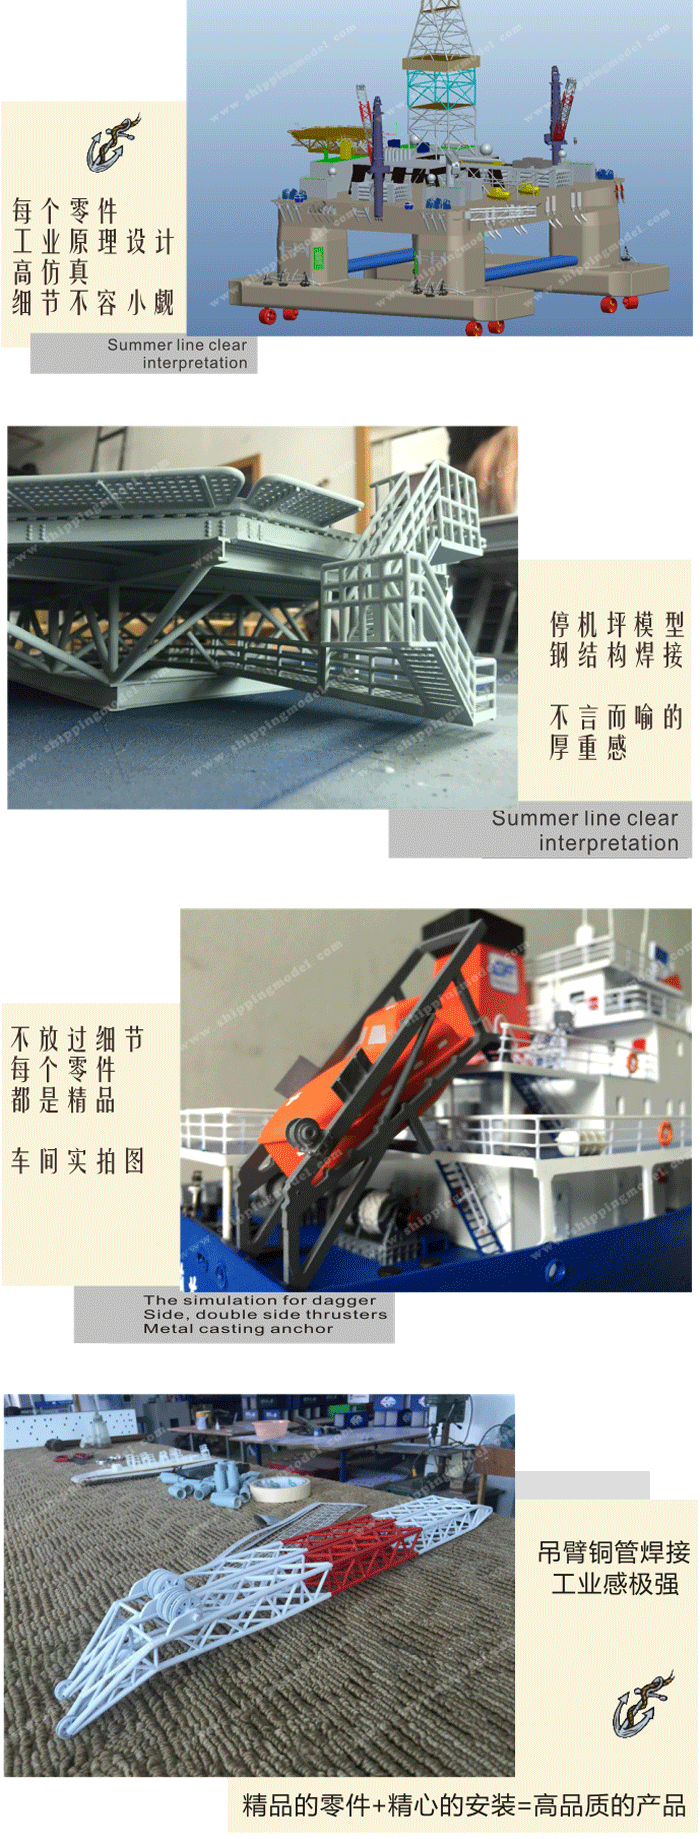 设备模型及剖析模型_40cm石油平台模型11_海艺坊模型工厂